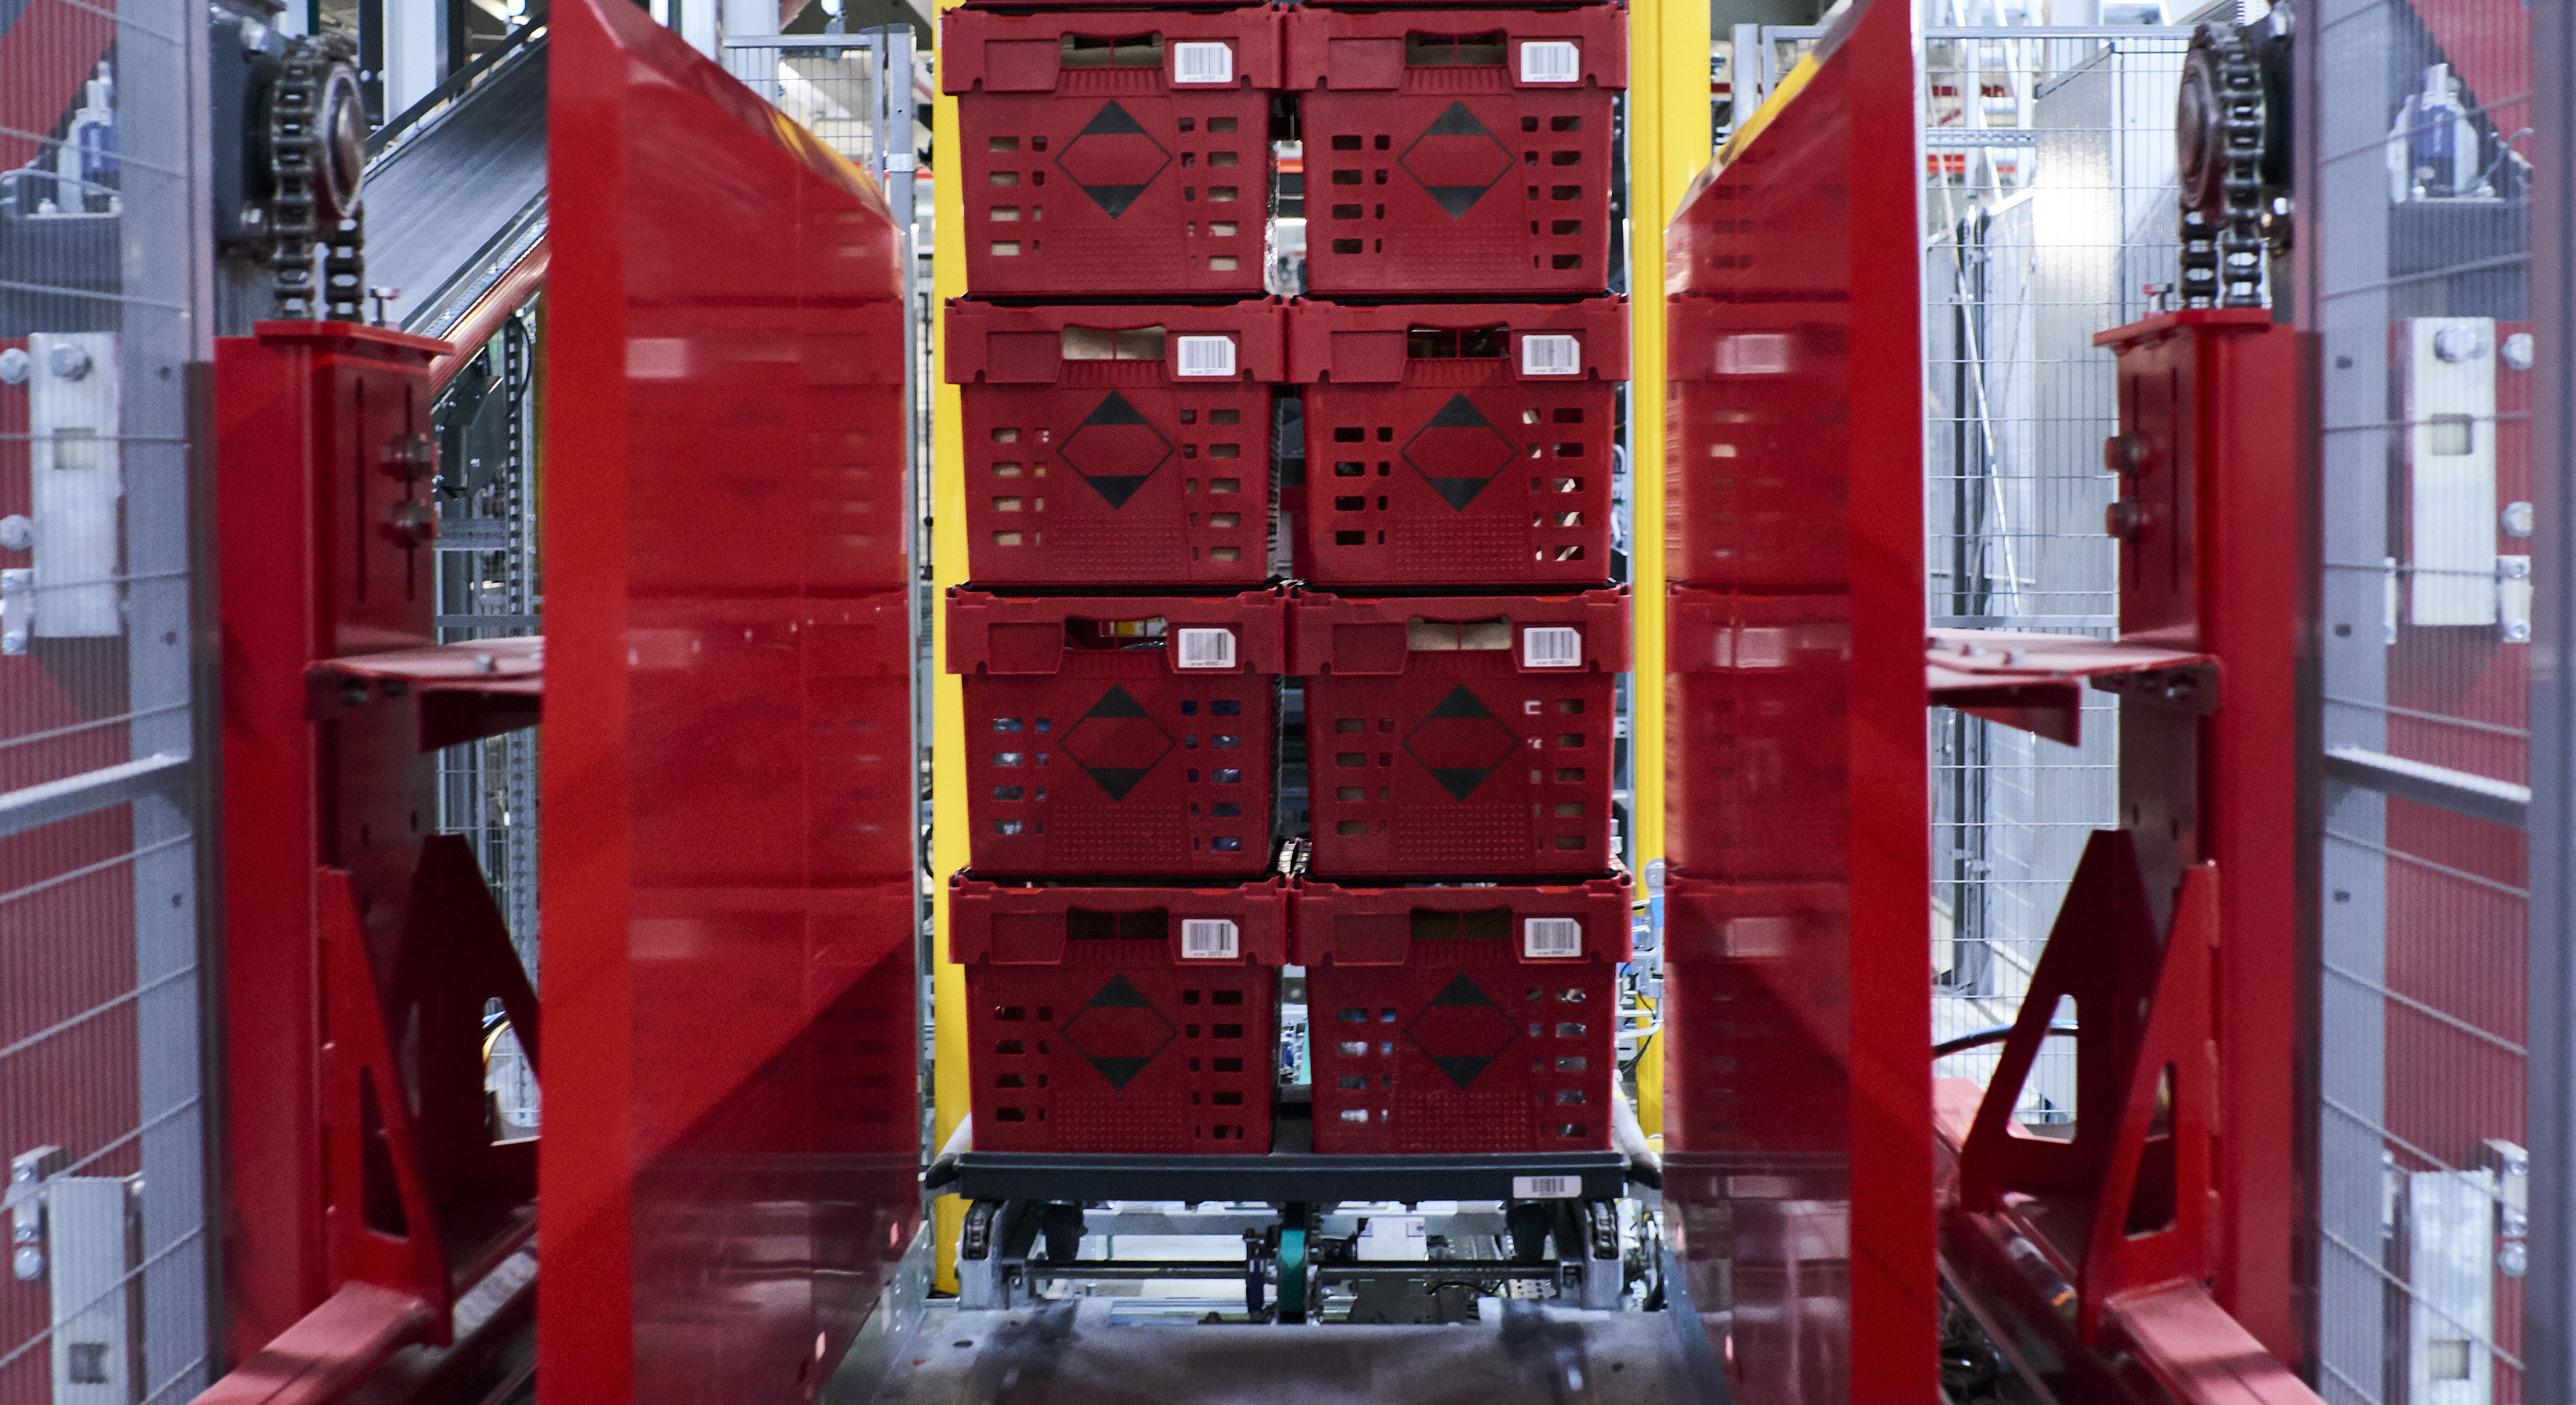 Das Bild zeigt rote Behälter, die mithilfe einer automatisierten Technologie aufeinandergestapelt werden.